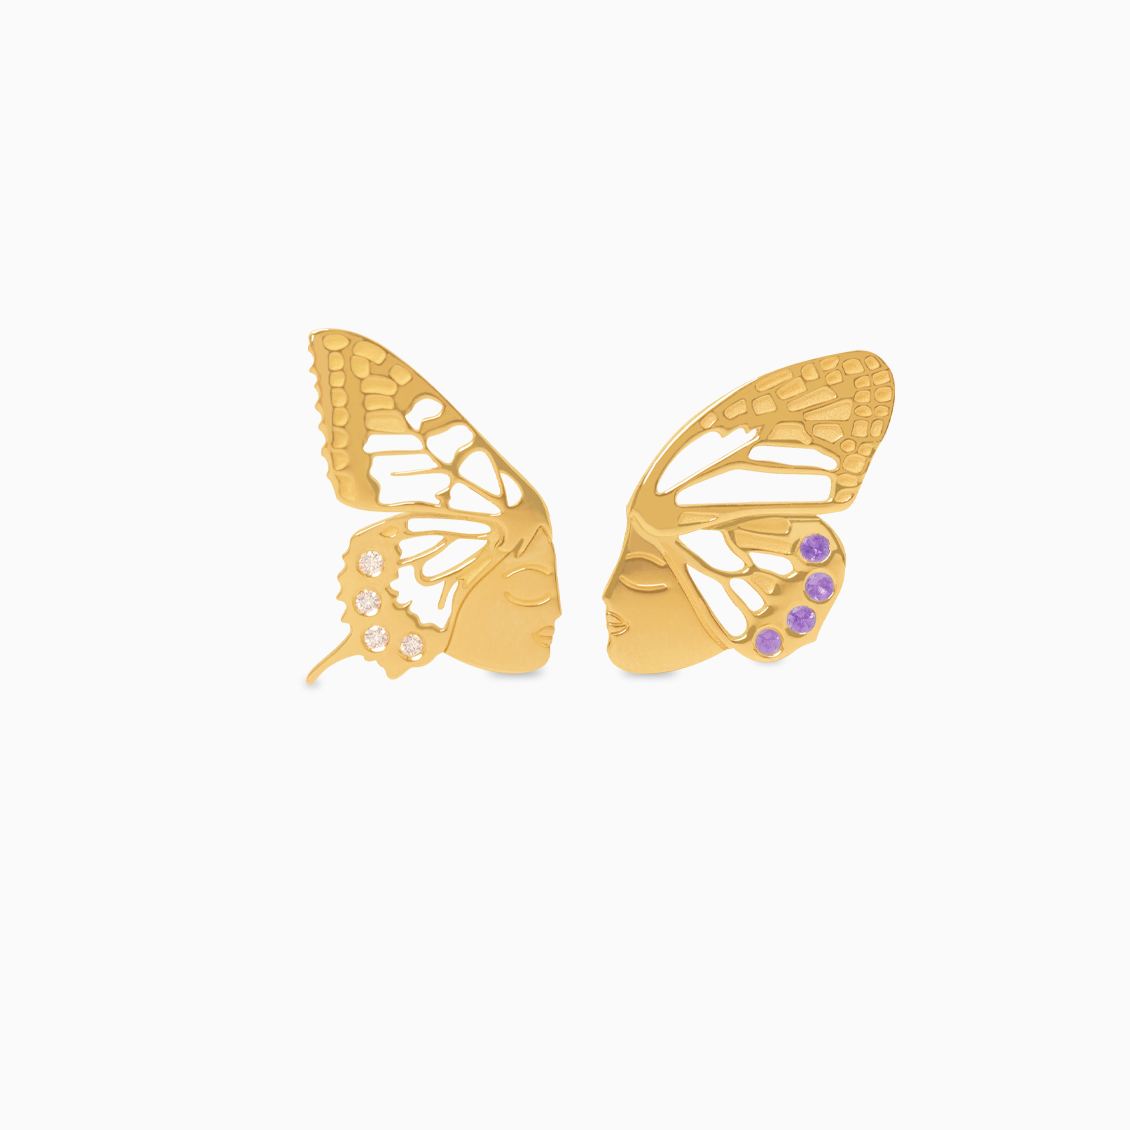 Aretes Almas Gemelas en oro amarillo de 18K forma mariposa con brillantes y amatistas